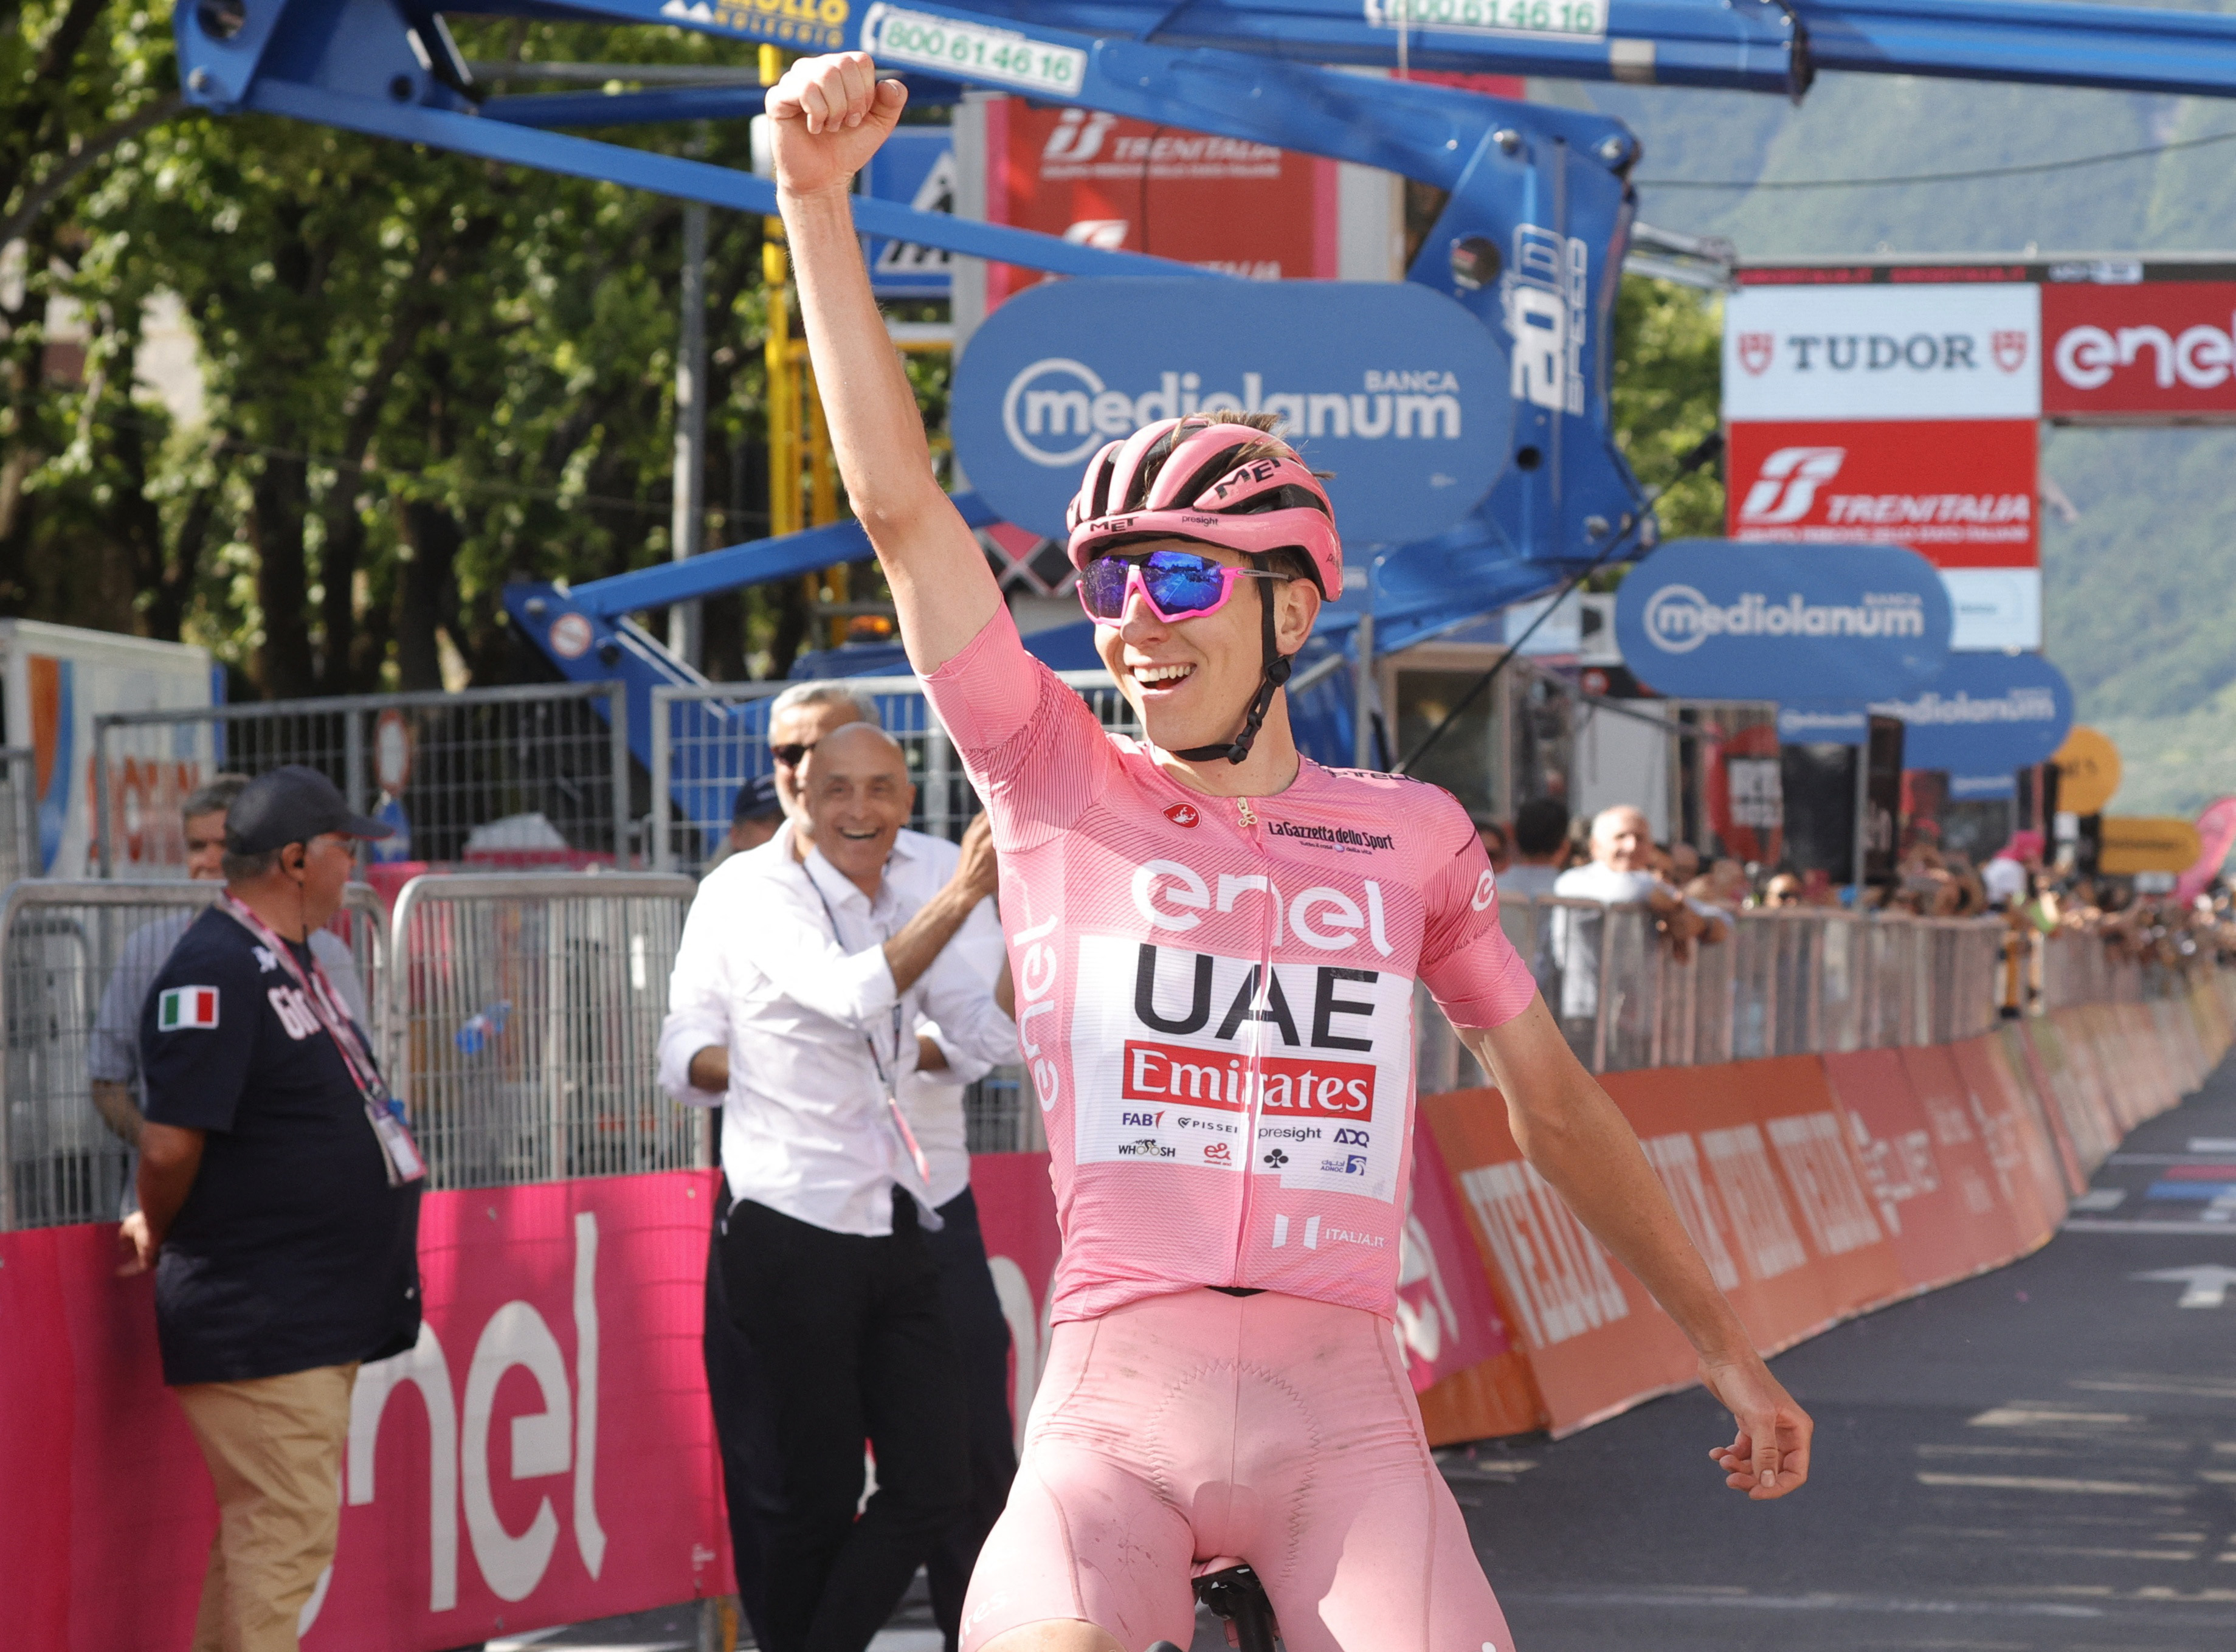 Giro d'Italia - Stage 20 - Alpago to Bassano del Grappa